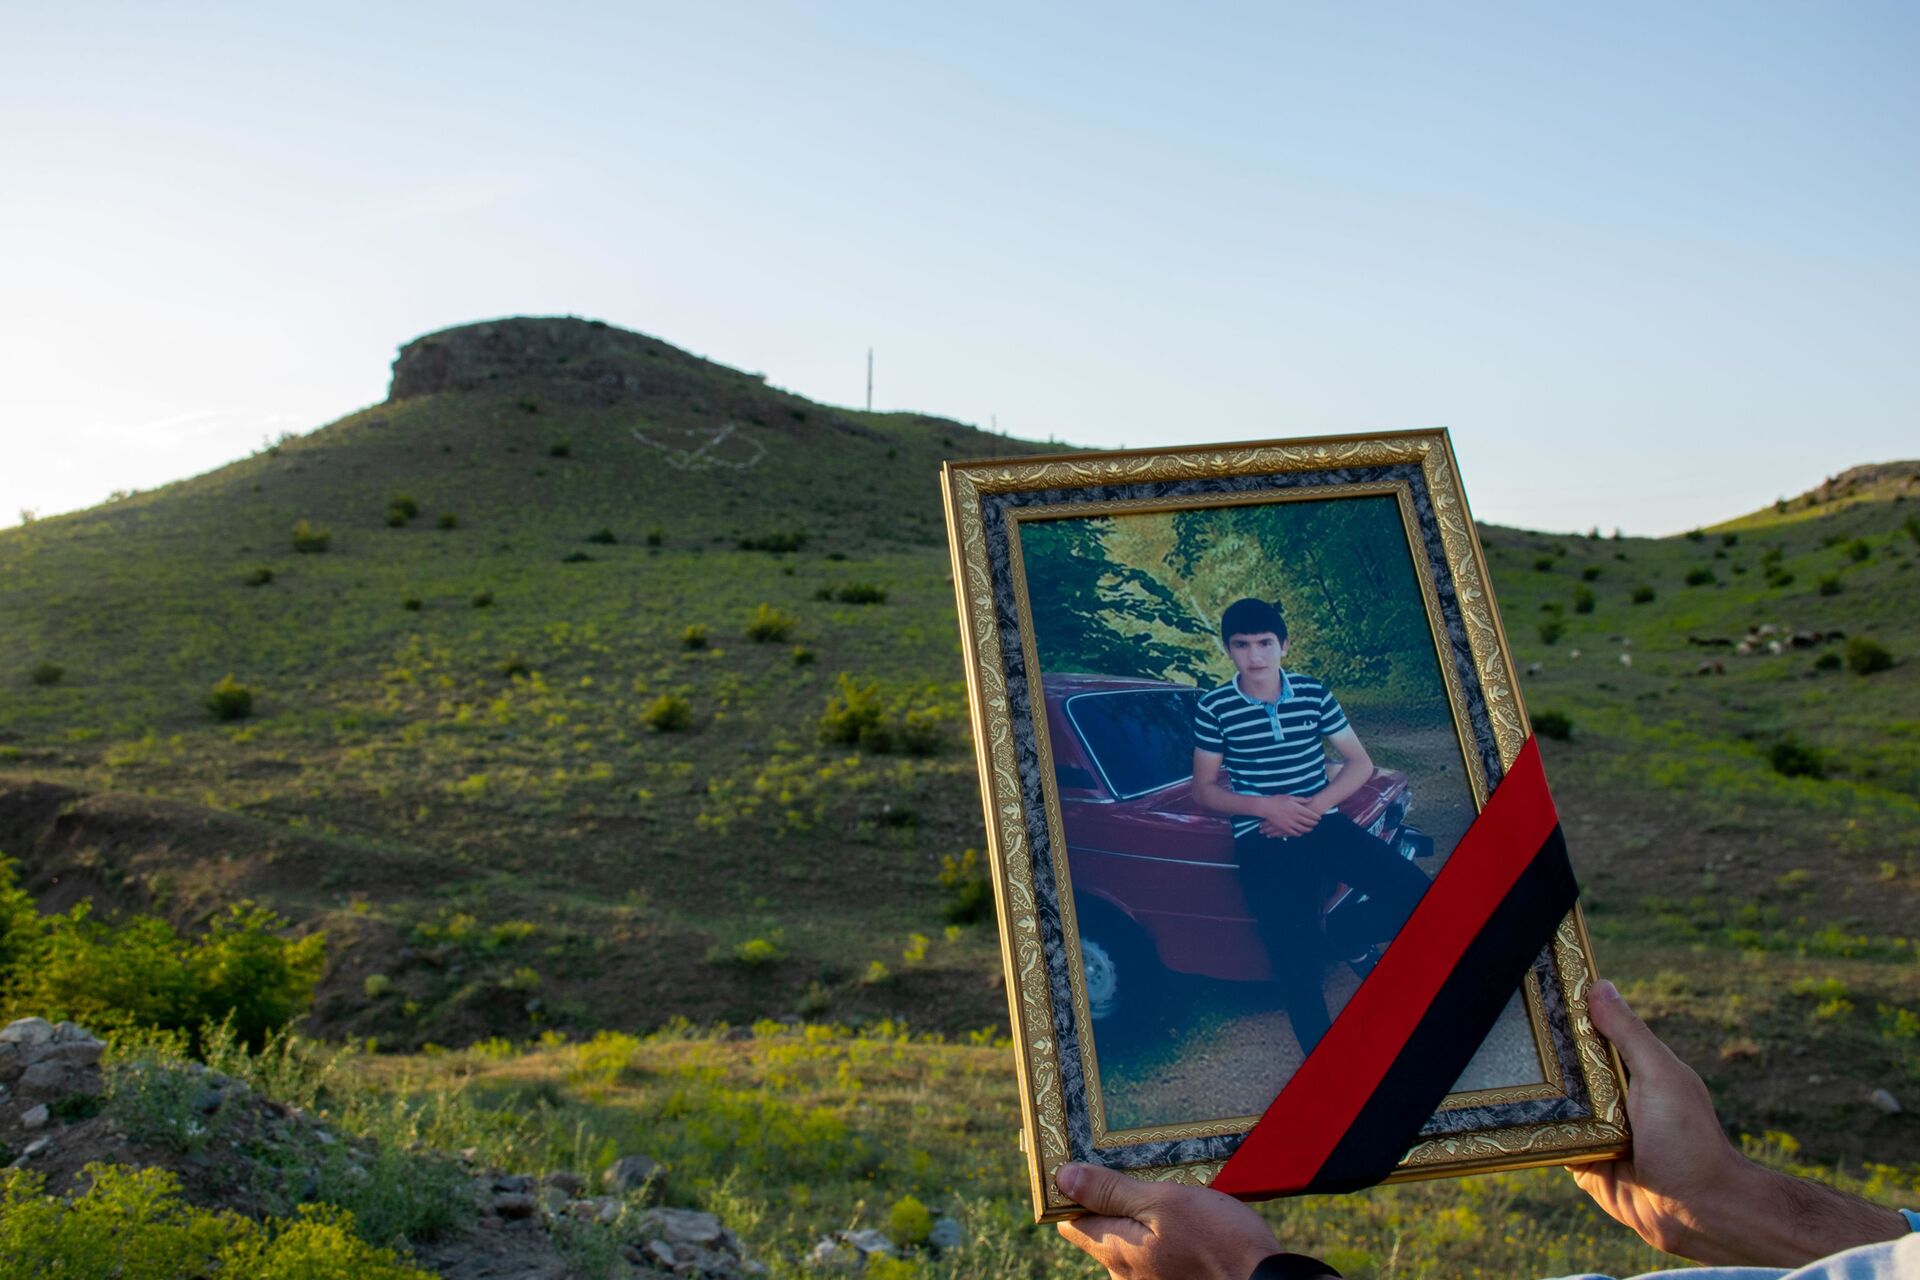 Любовь навсегда: сердце молодого шамкирца навсегда застыло на холме - Sputnik Азербайджан, 1920, 20.06.2021